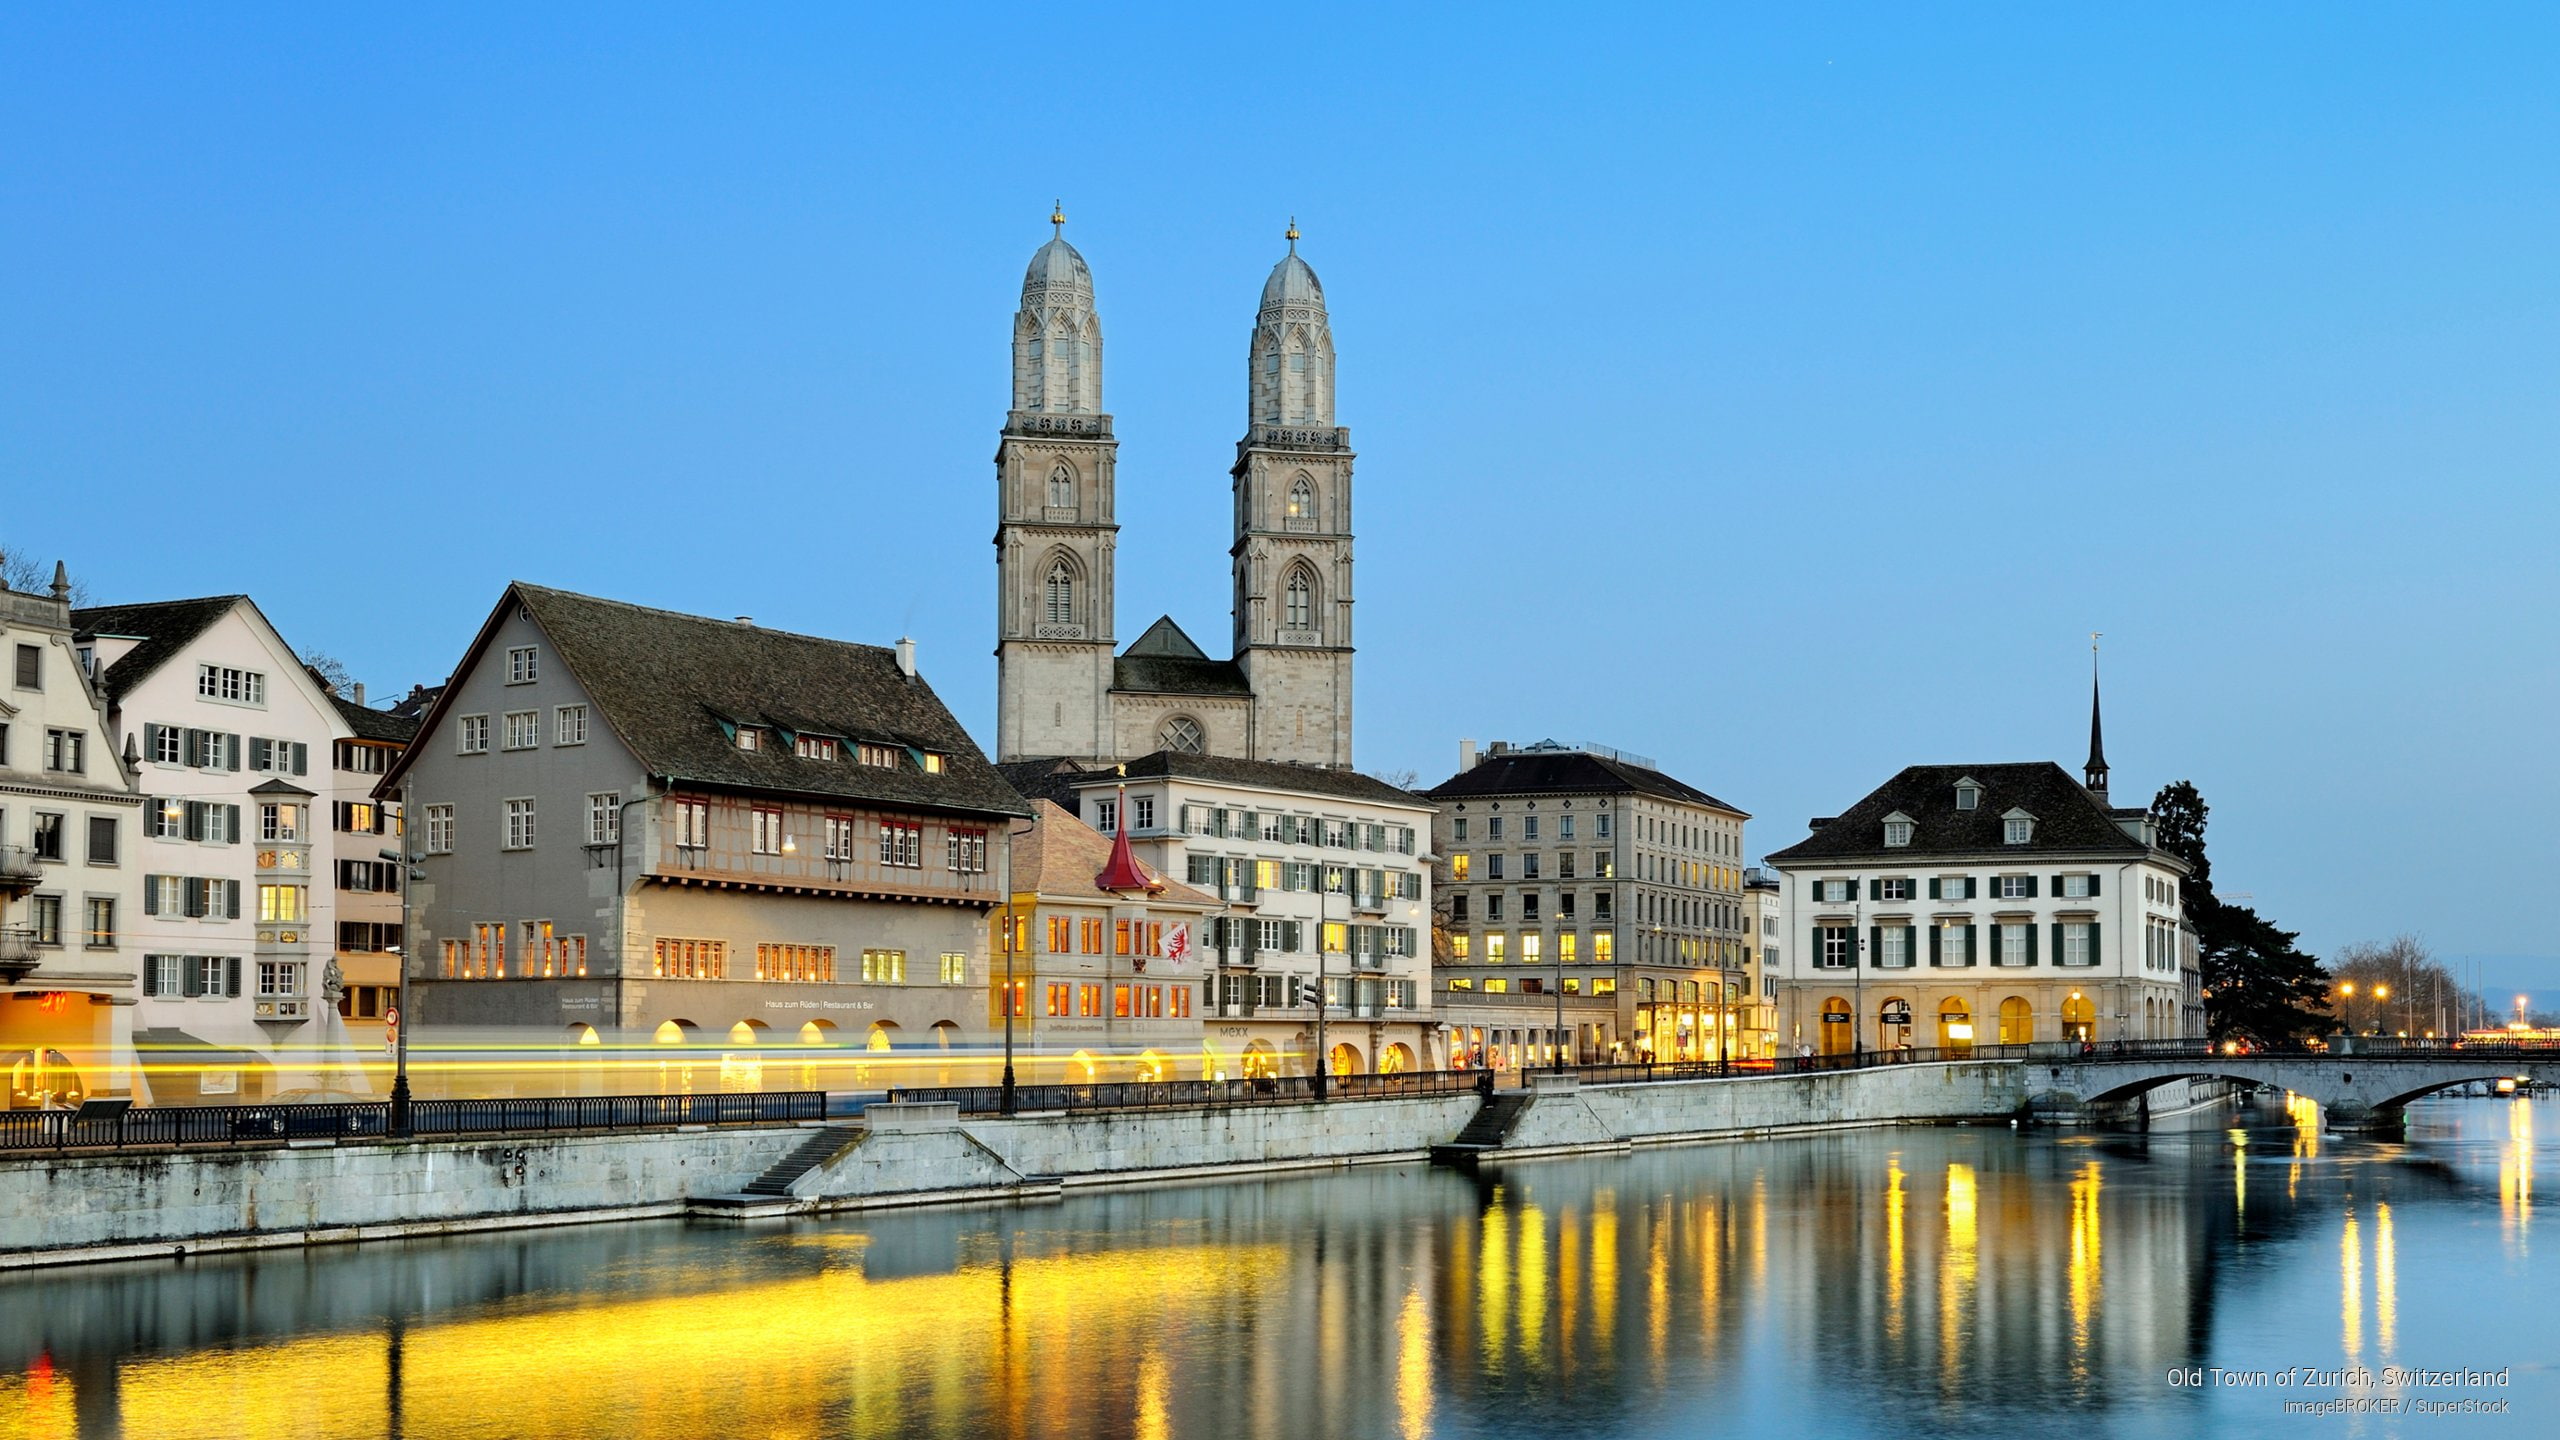 Old Town of Zurich, Switzerland, Europe